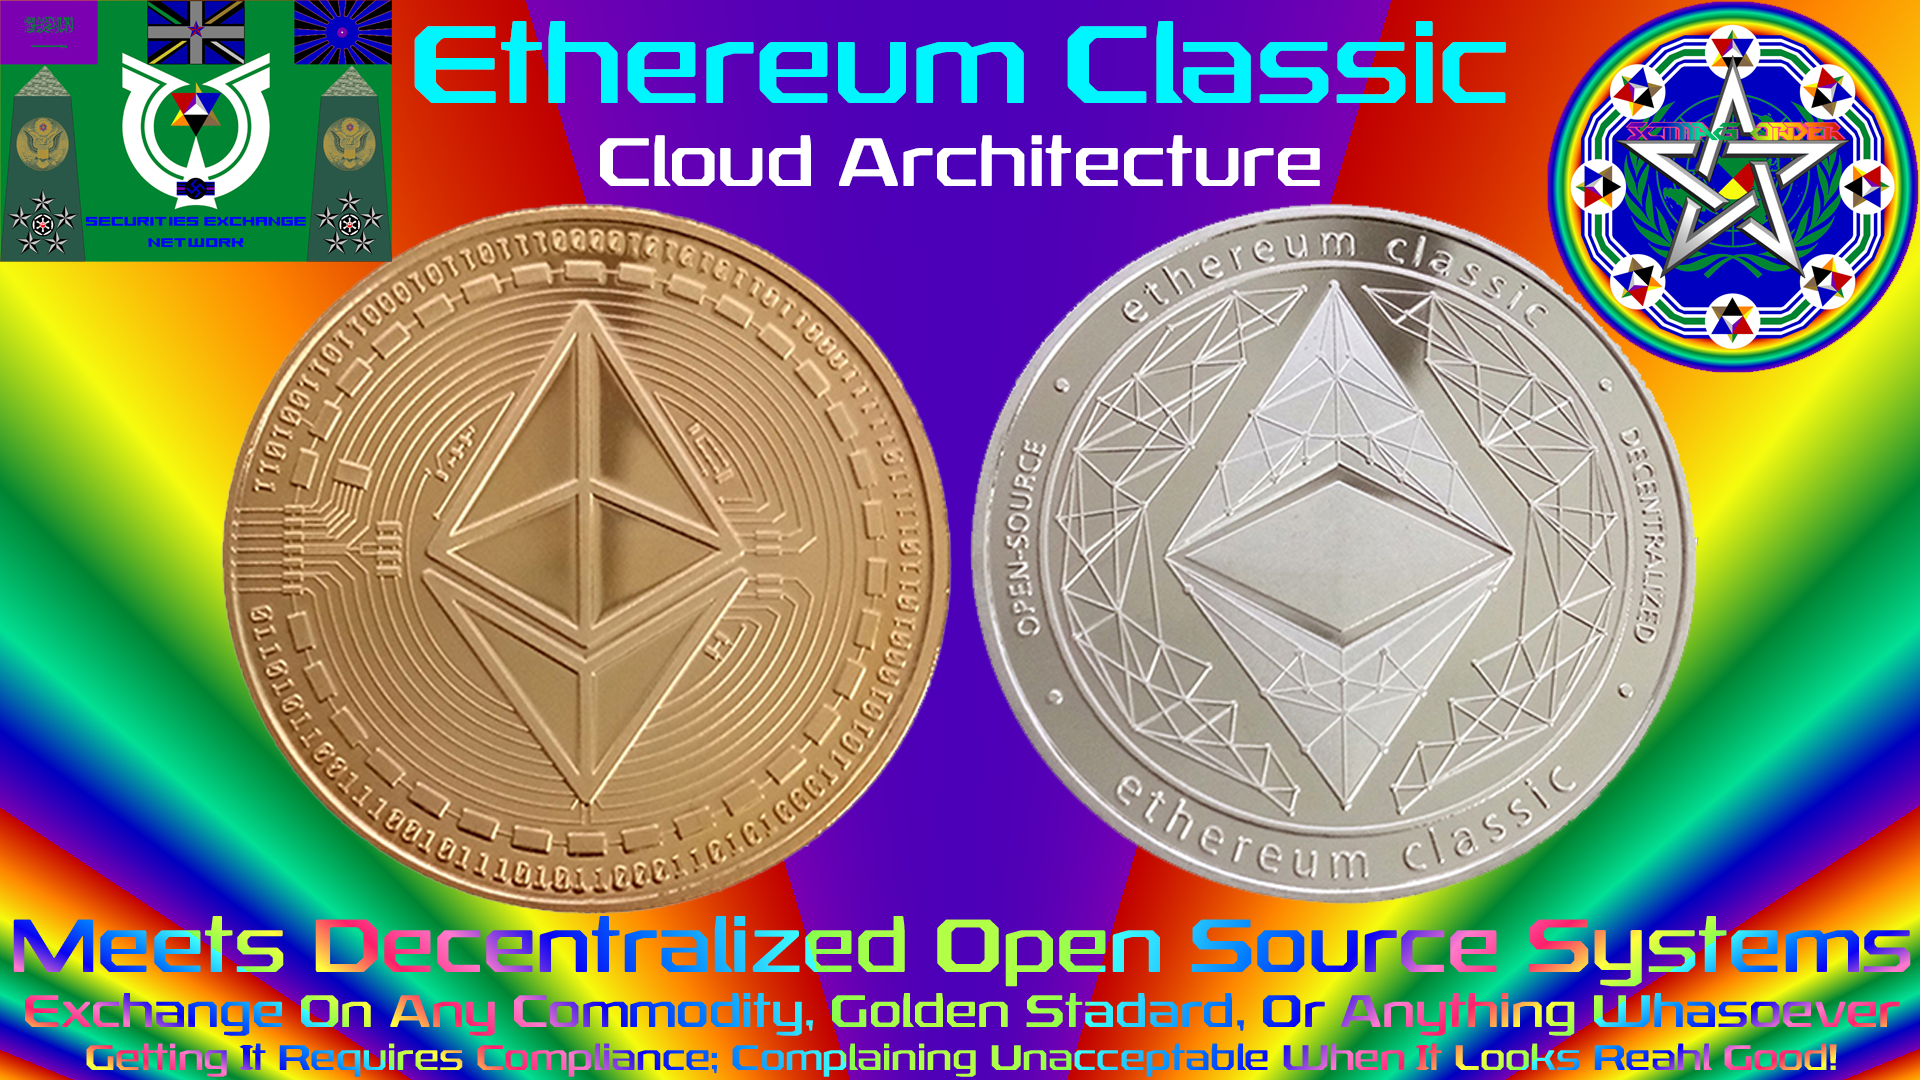 Ethereum Classic, Cloud Architecture